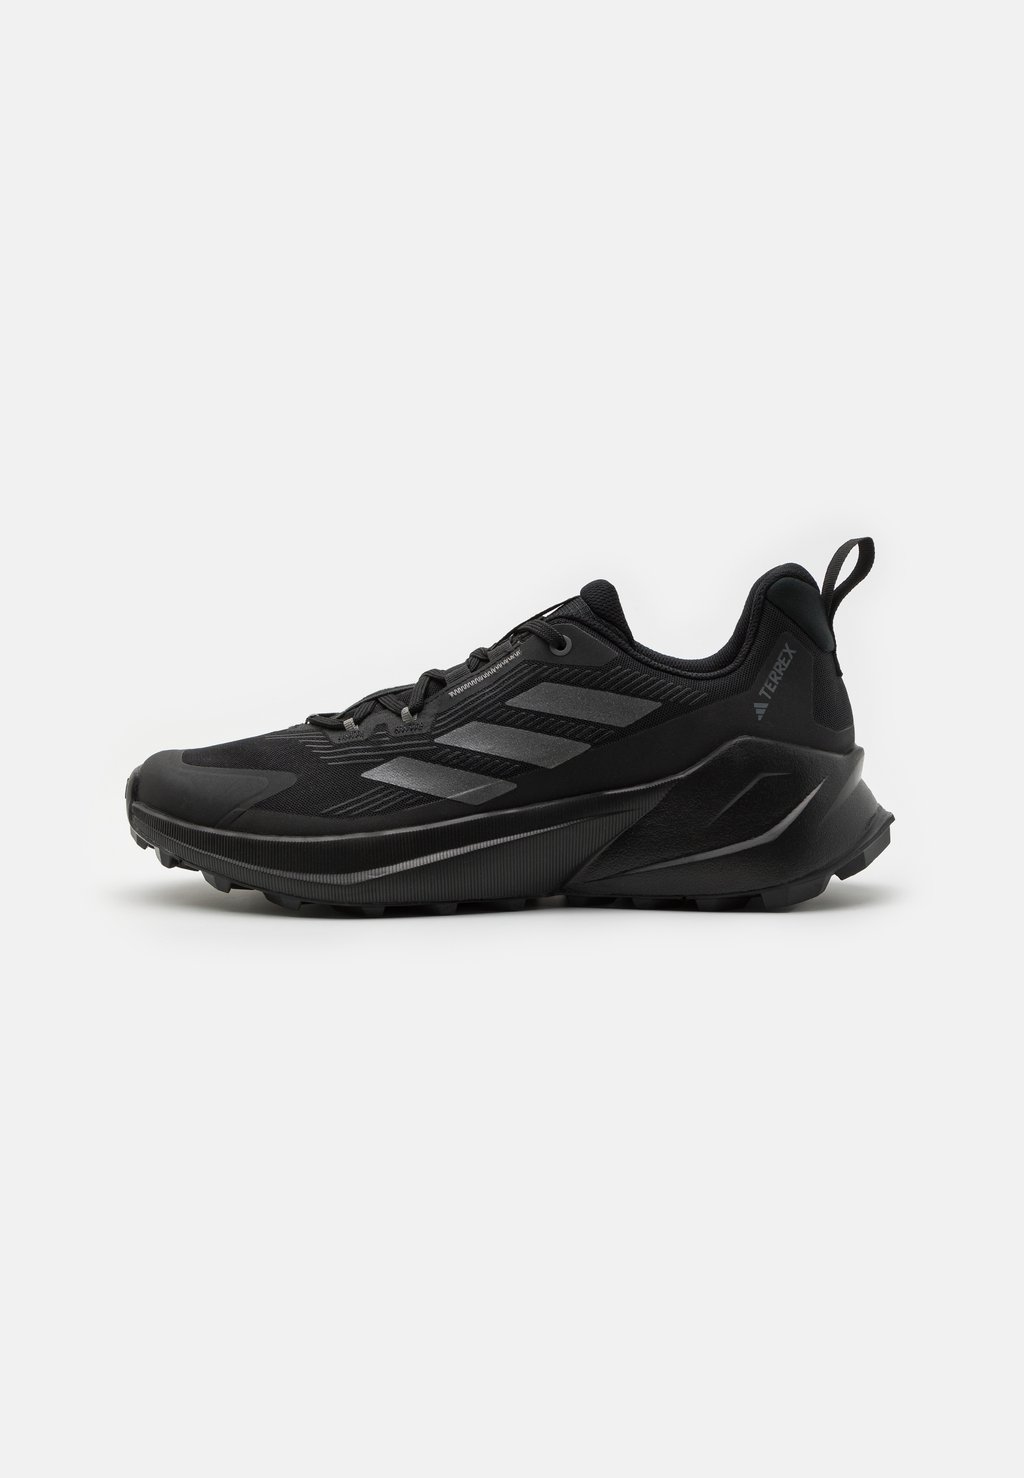 Походная обувь Terrex Trailmaker 2 Hiking Shoes Adidas, цвет core black/grey four